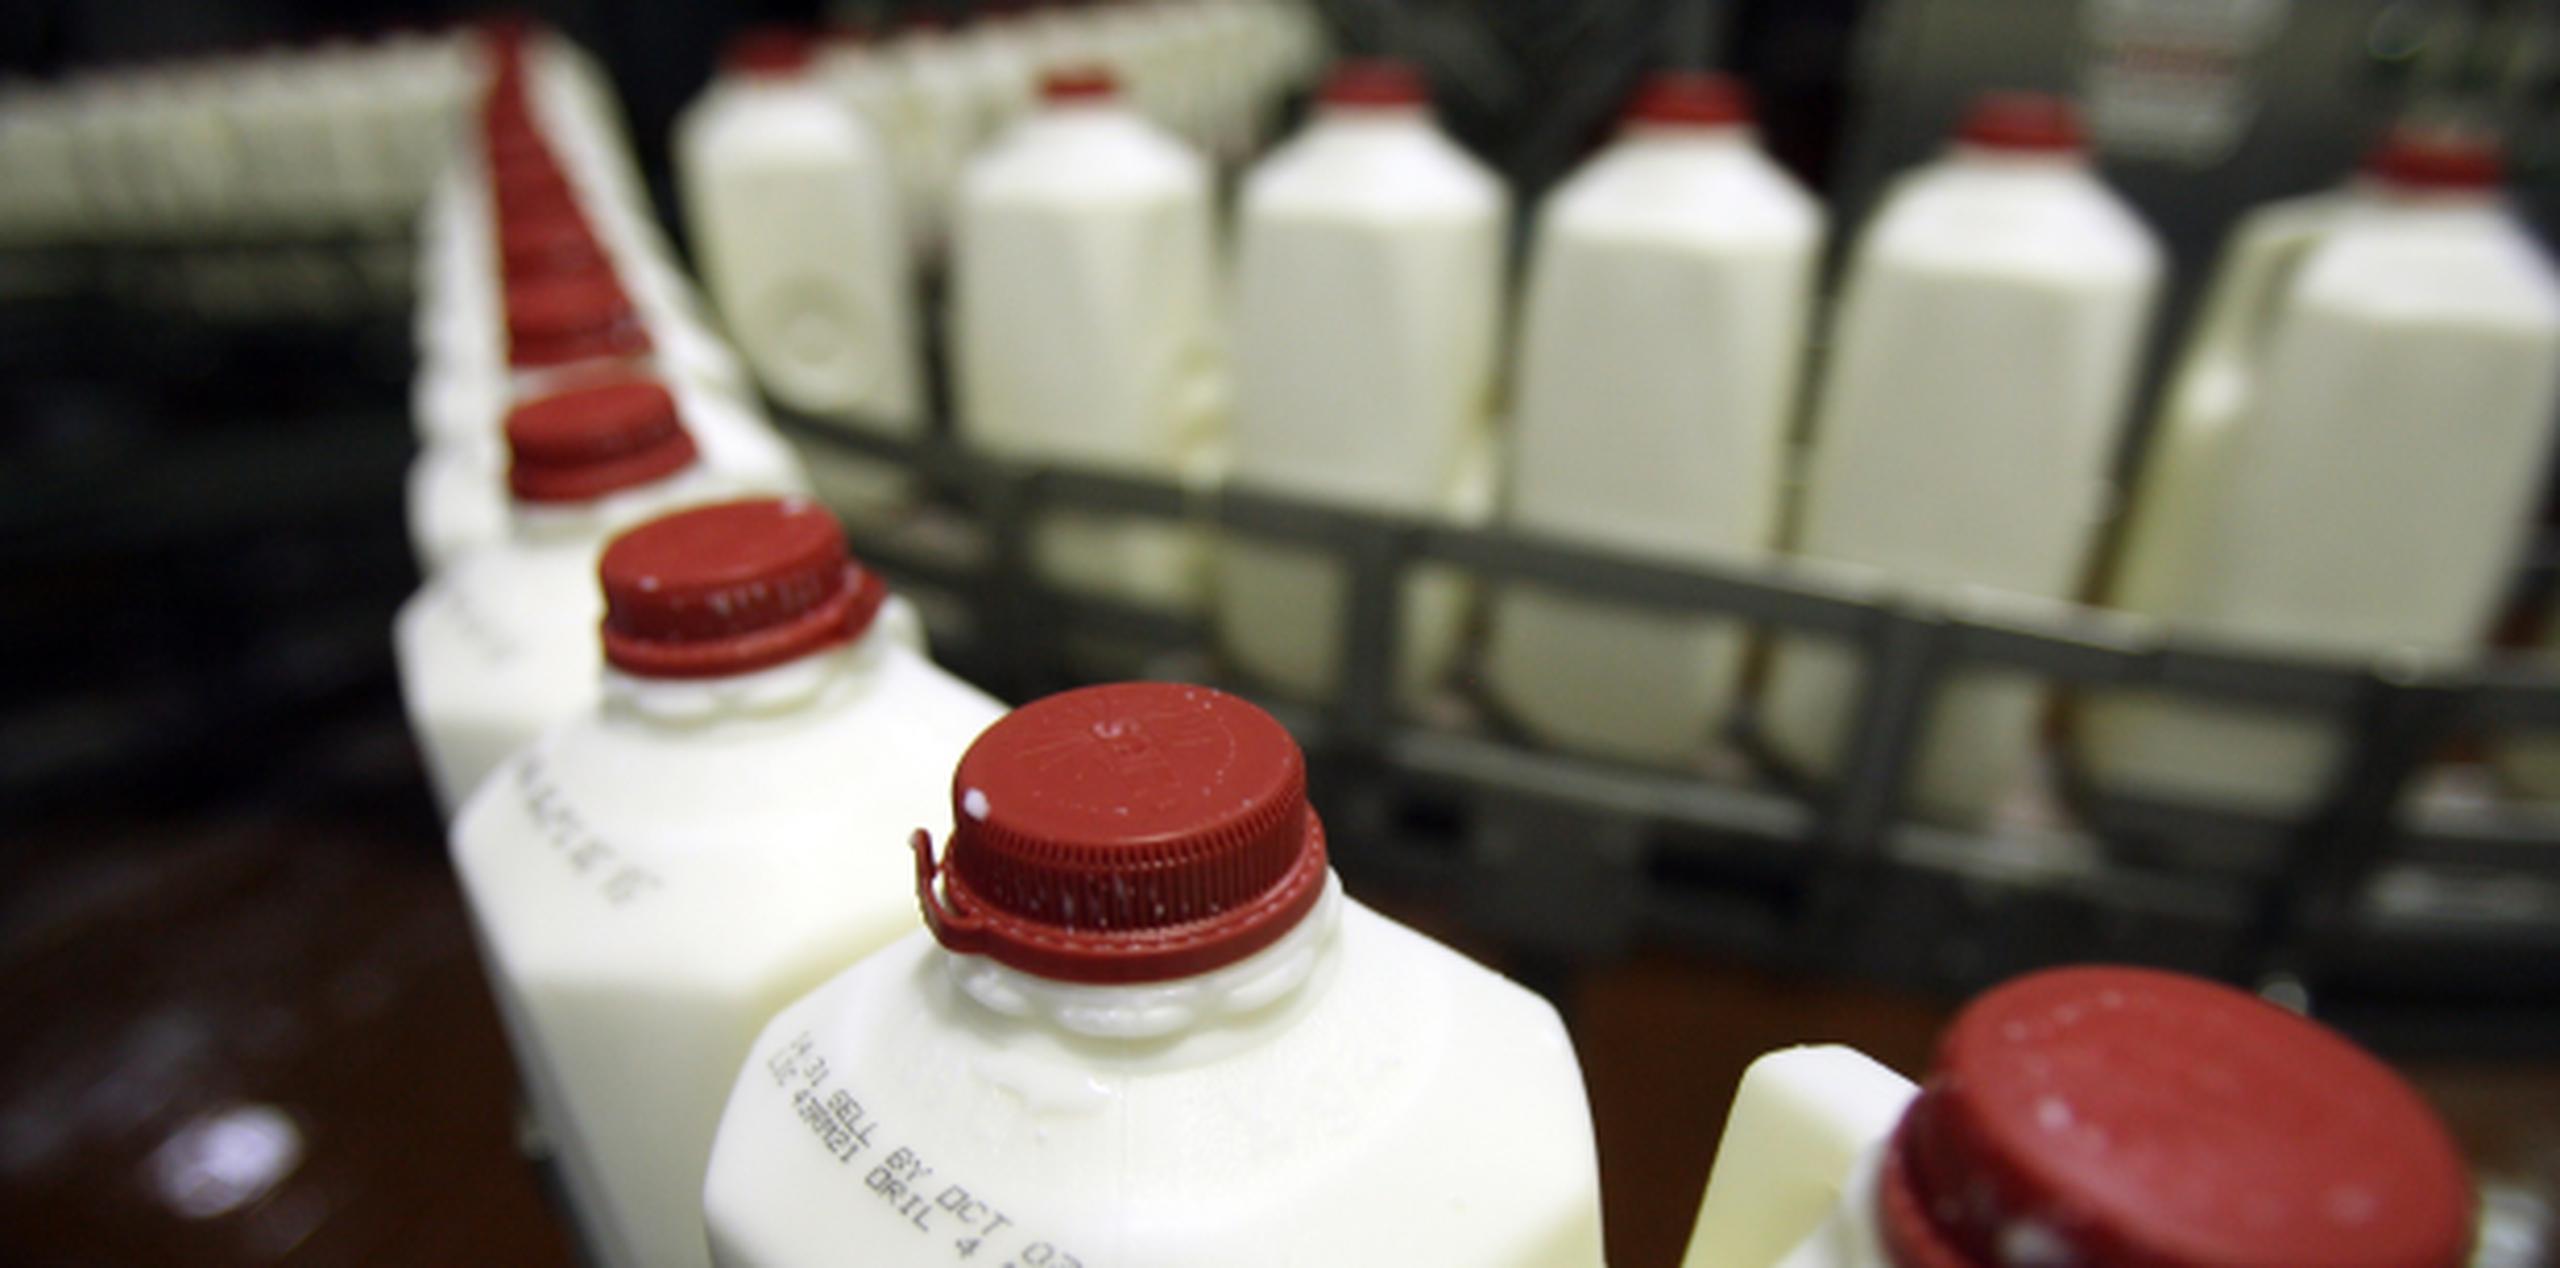 La empresa tiene una participación de un 66% en el mercado de la leche fresca en la Isla. (Archivo)